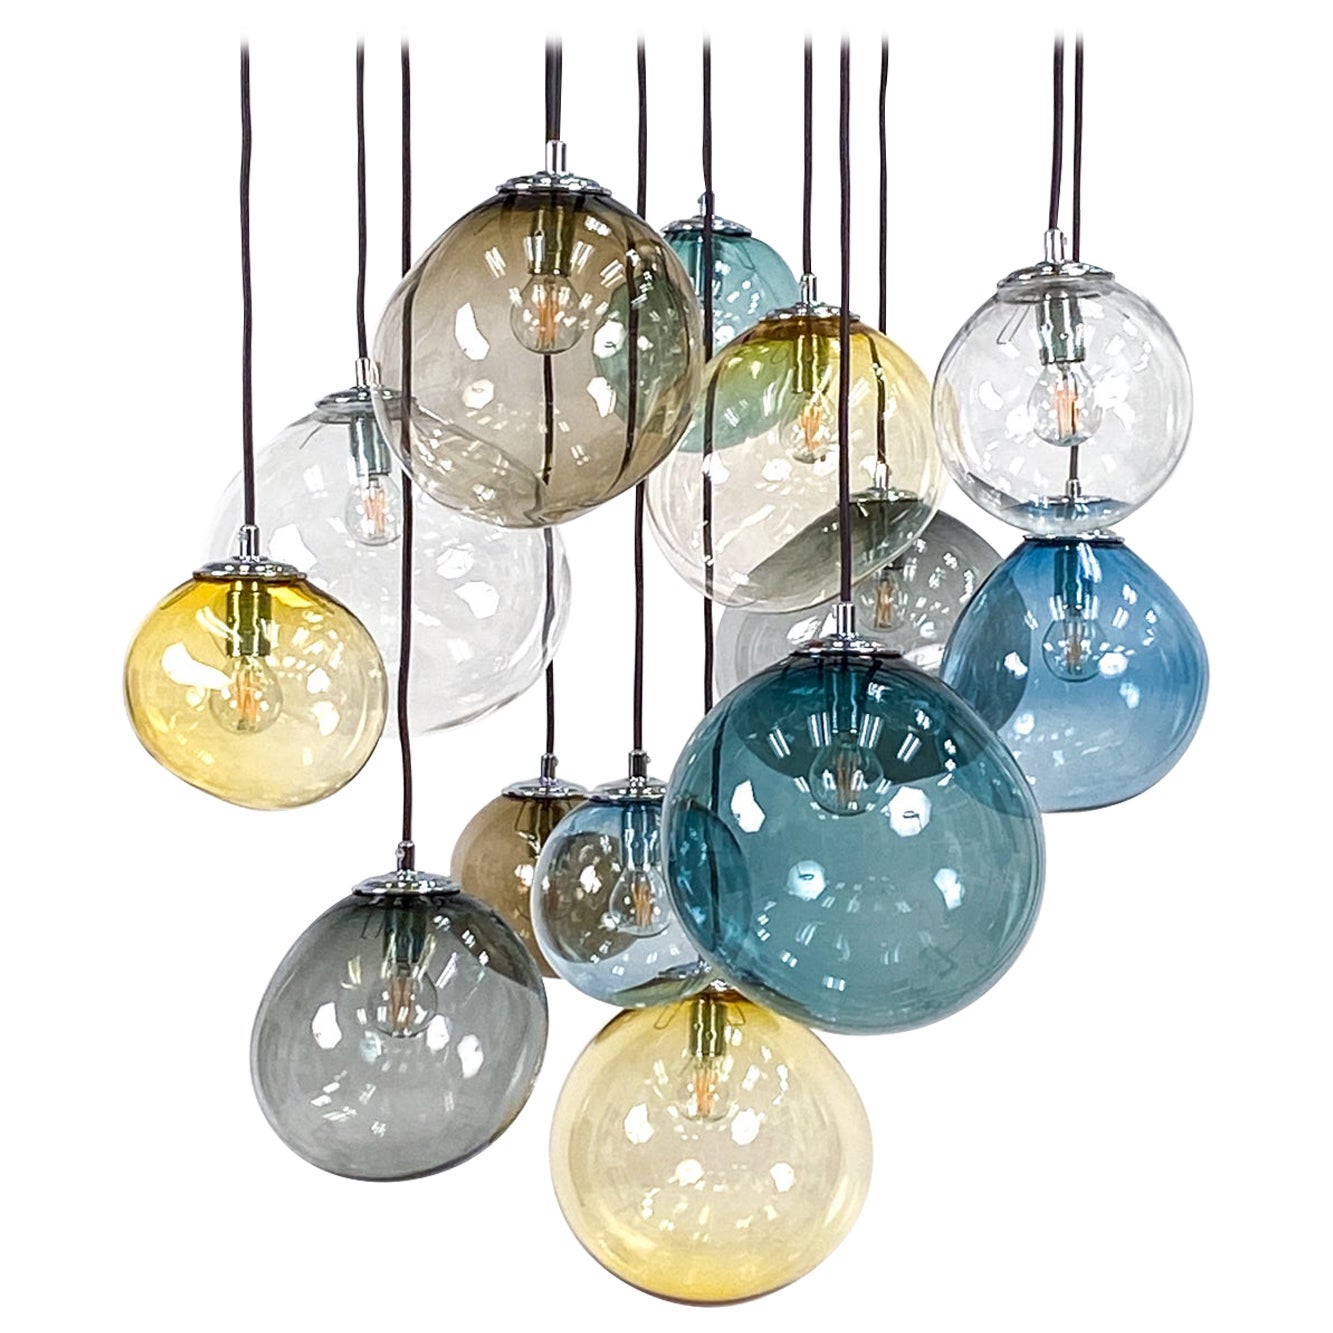 Pernille Bulow Danish Modern "Sky" Art Glass Pendant Lights For Sale